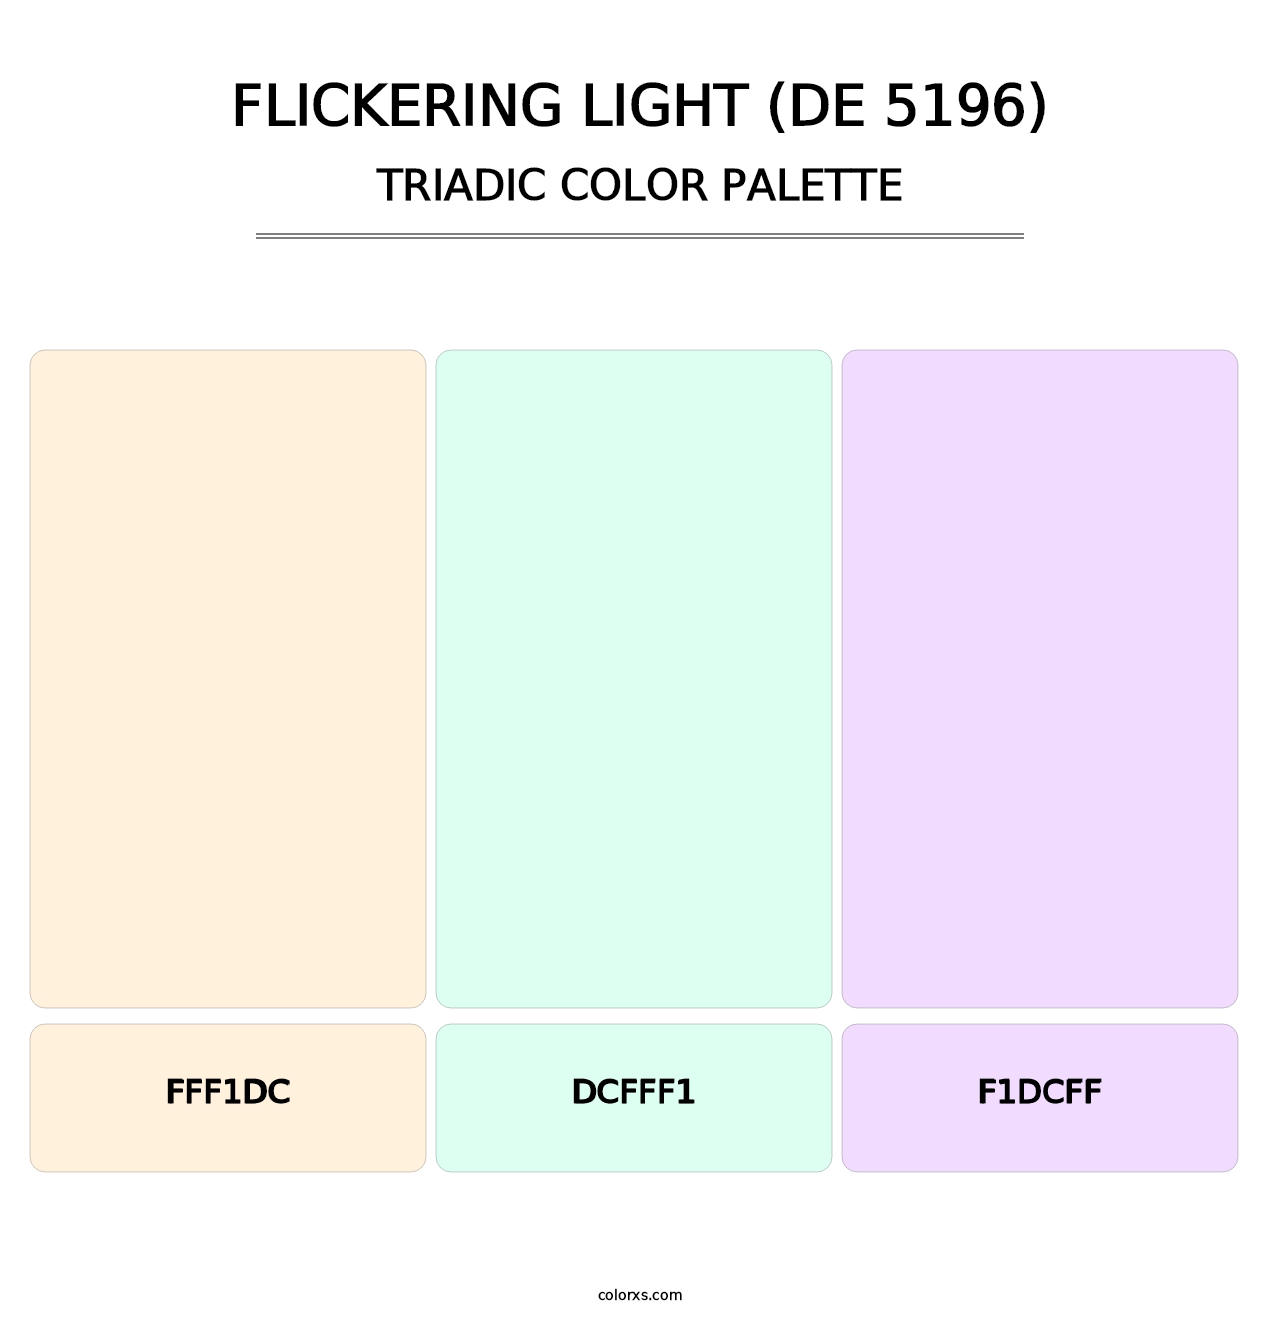 Flickering Light (DE 5196) - Triadic Color Palette